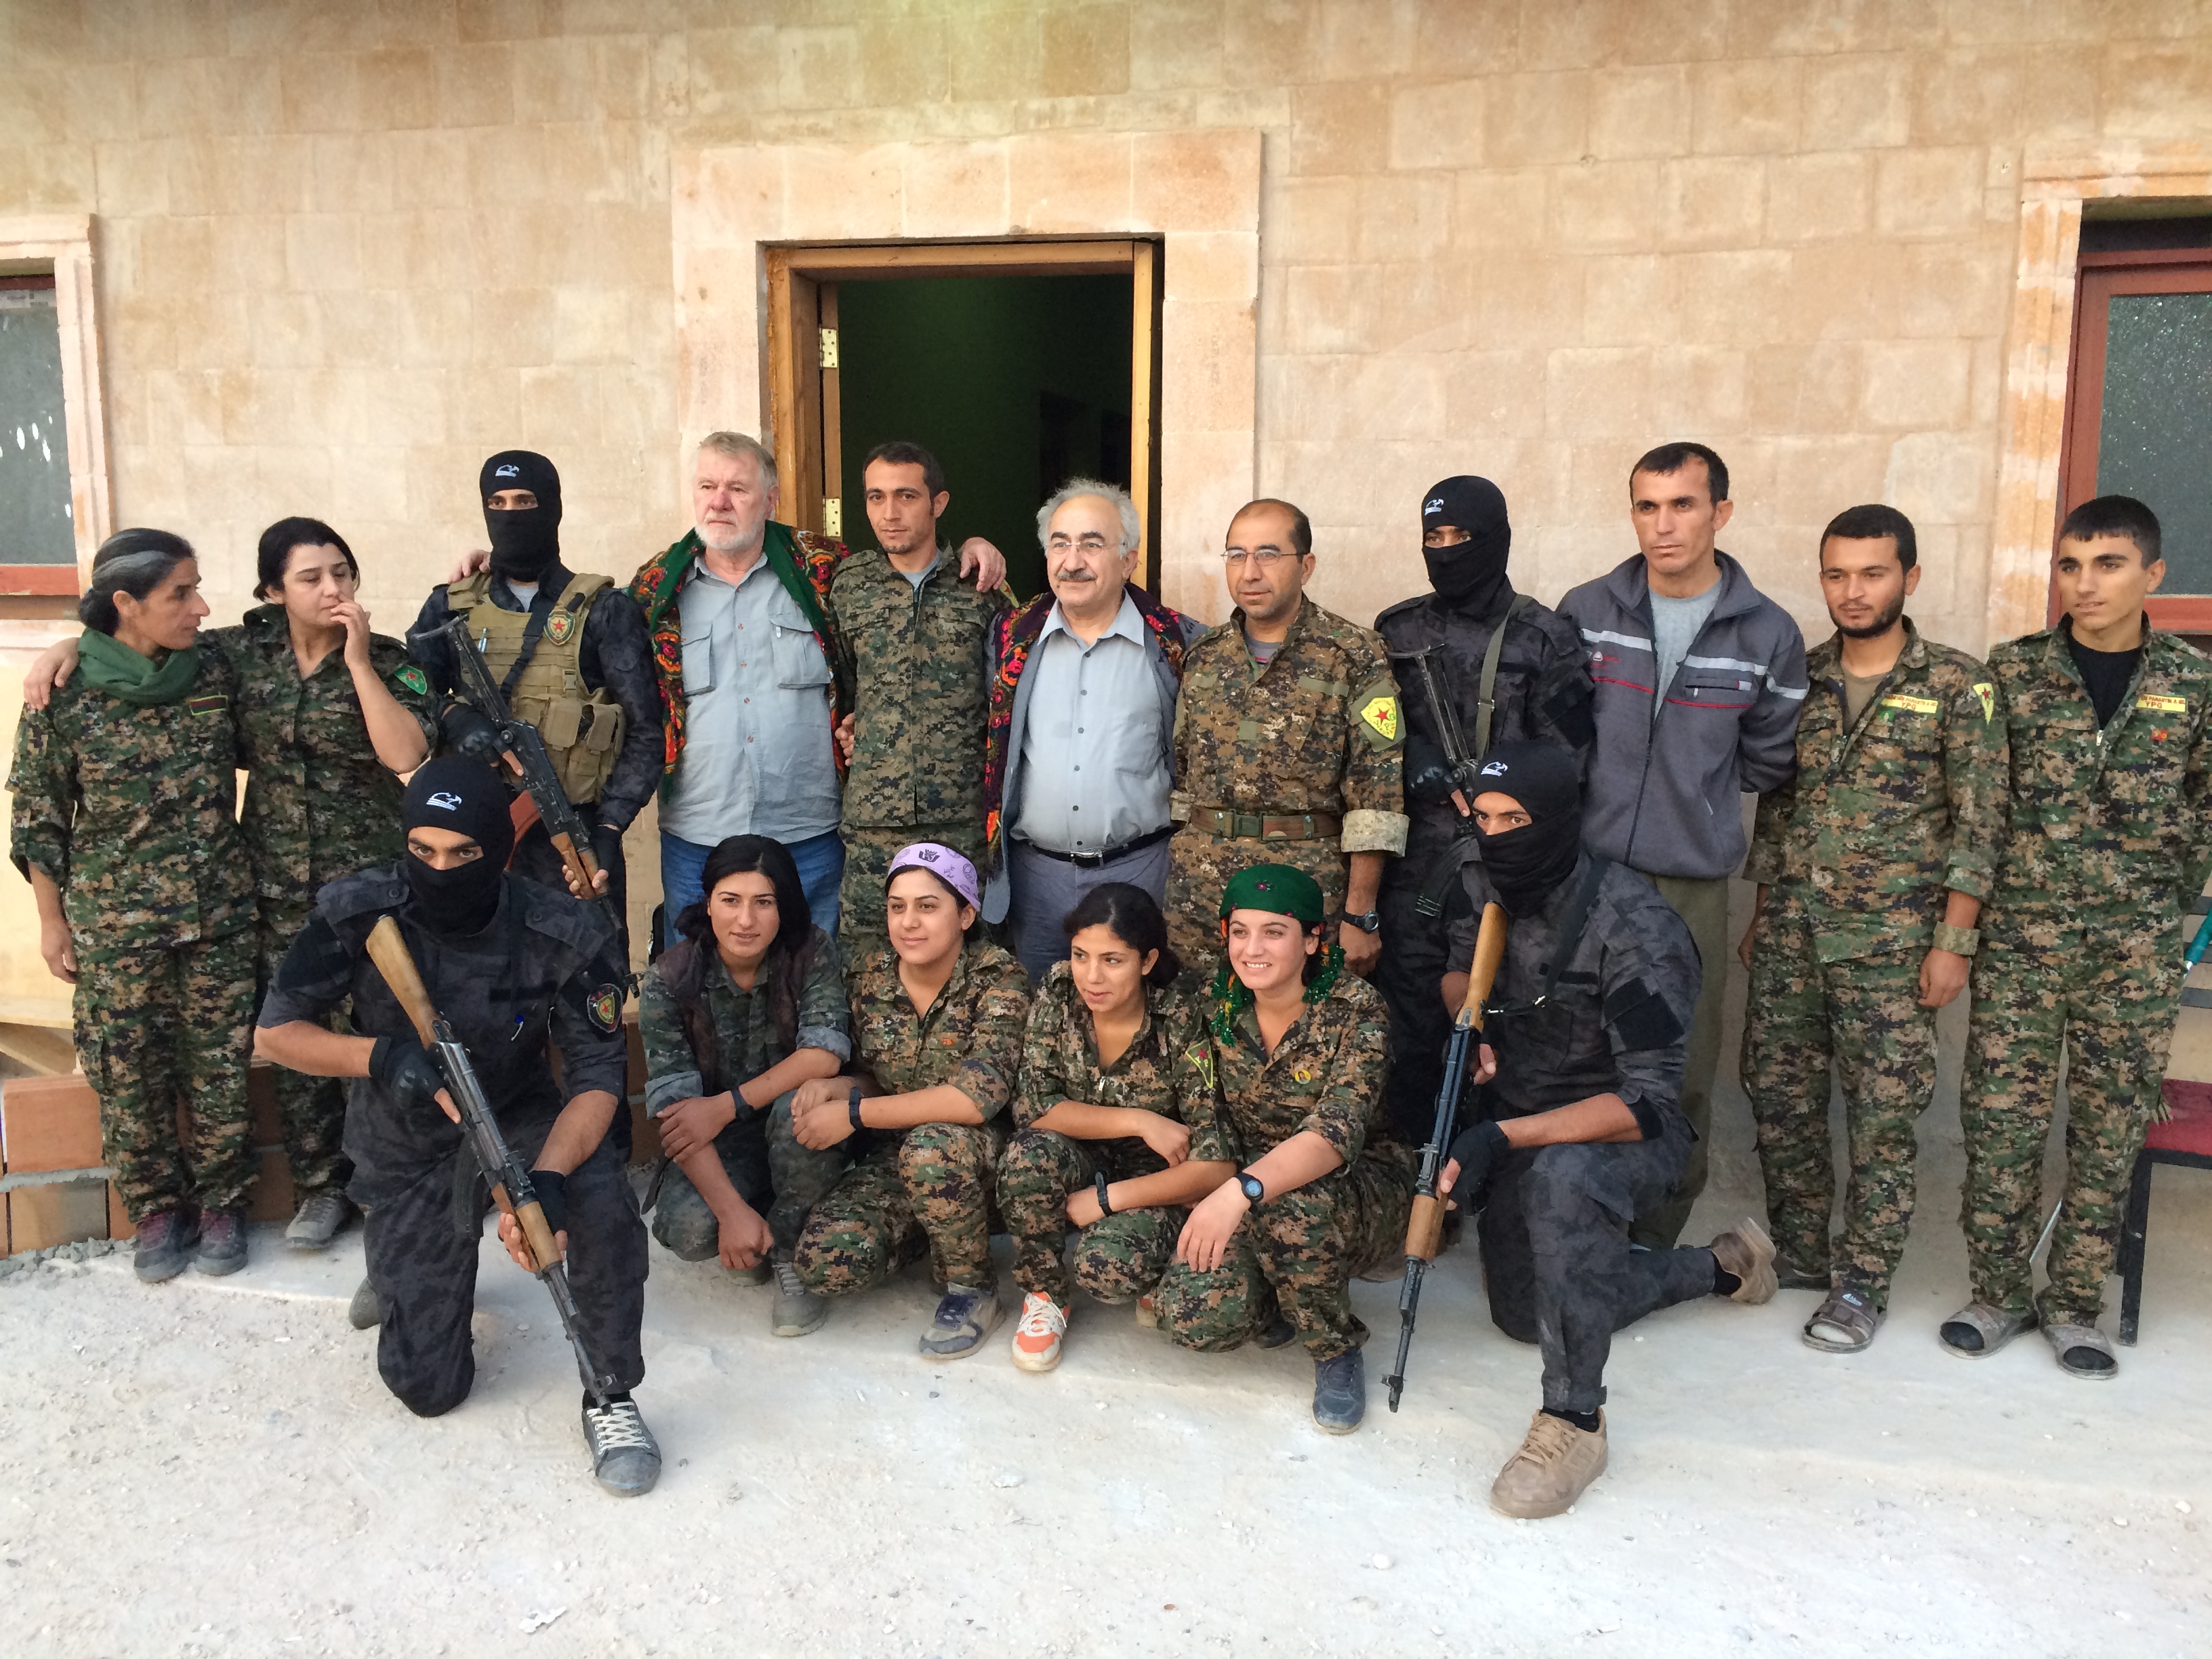 in Kobane